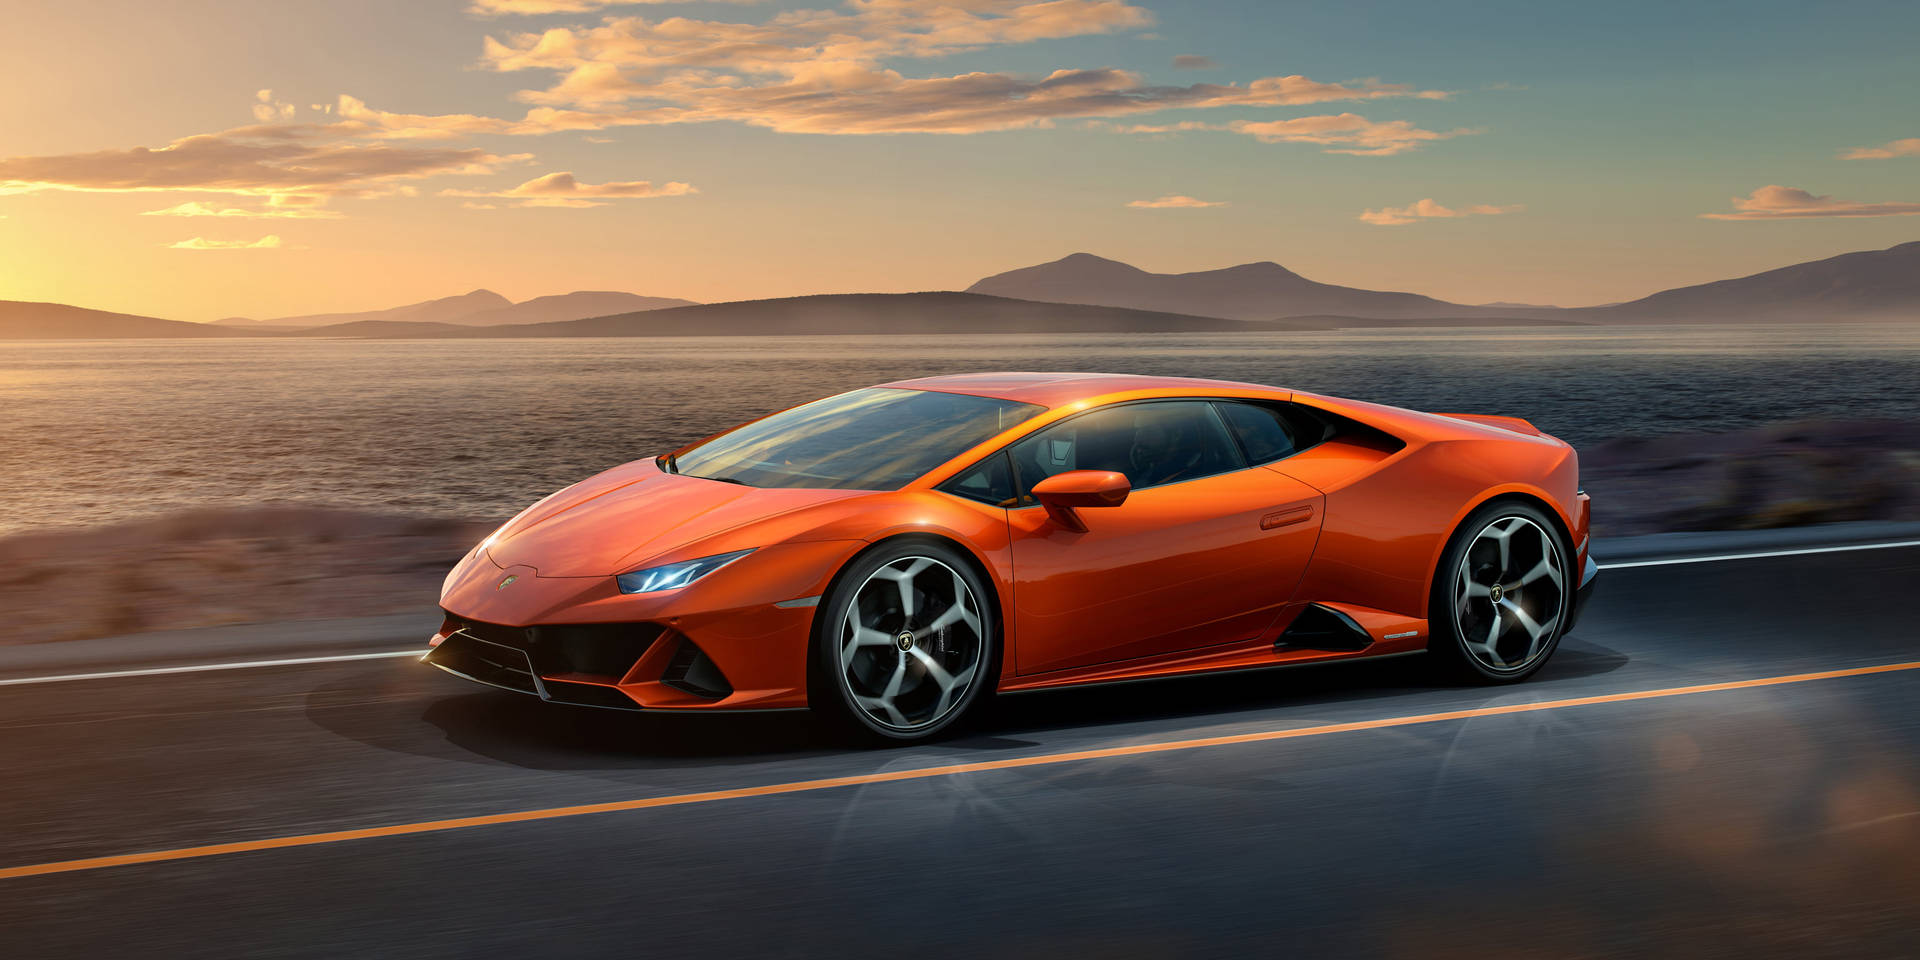 Luxurious Speed - Lamborghini In Superior 4k Wallpaper